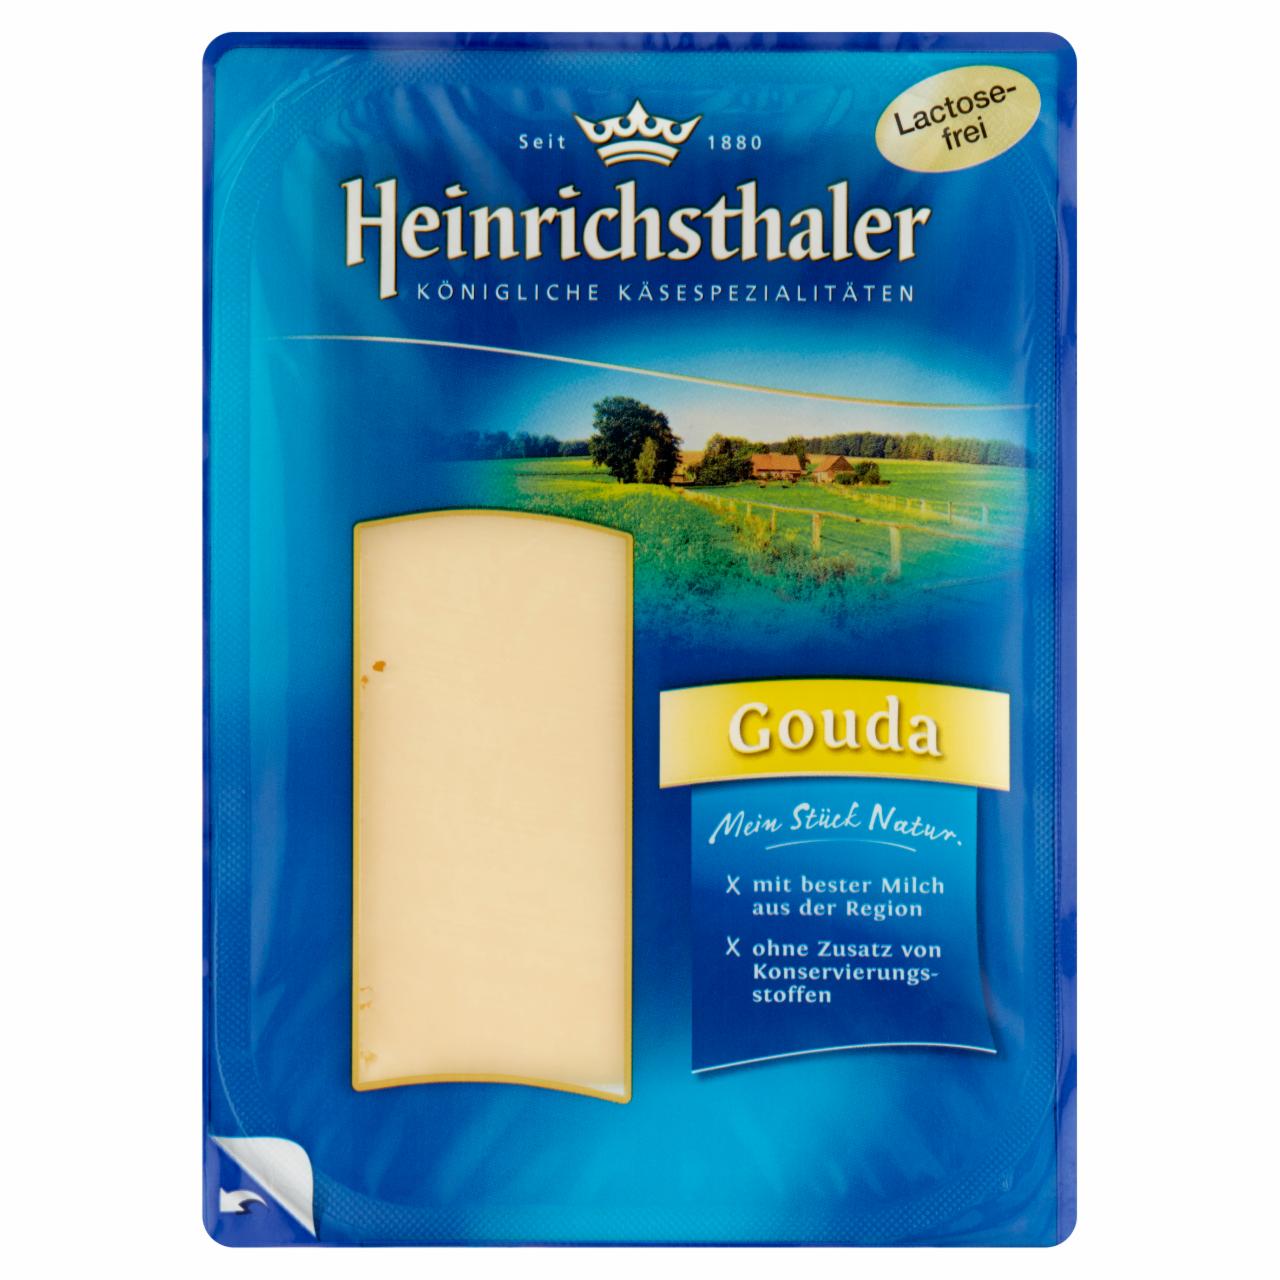 Képek - Heinrichsthaler Gouda zsíros, félkemény, szeletelt, laktózmentes sajt 150 g